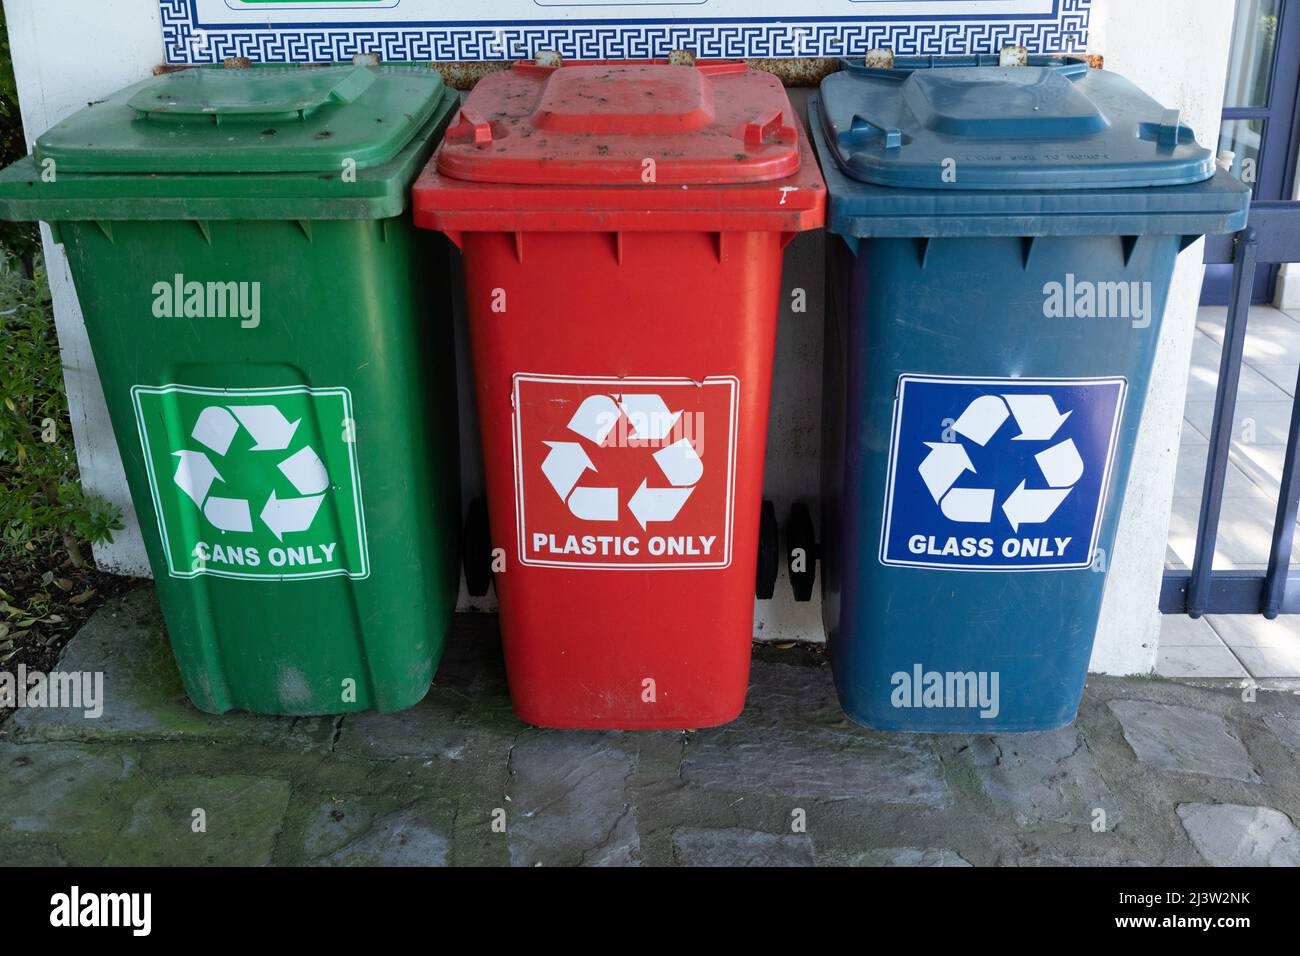 Trois bacs en plastique de différentes couleurs pour le recyclage. Vert pour les boîtes rouge pour le plastique et un bac bleu pour le verre. Banque D'Images